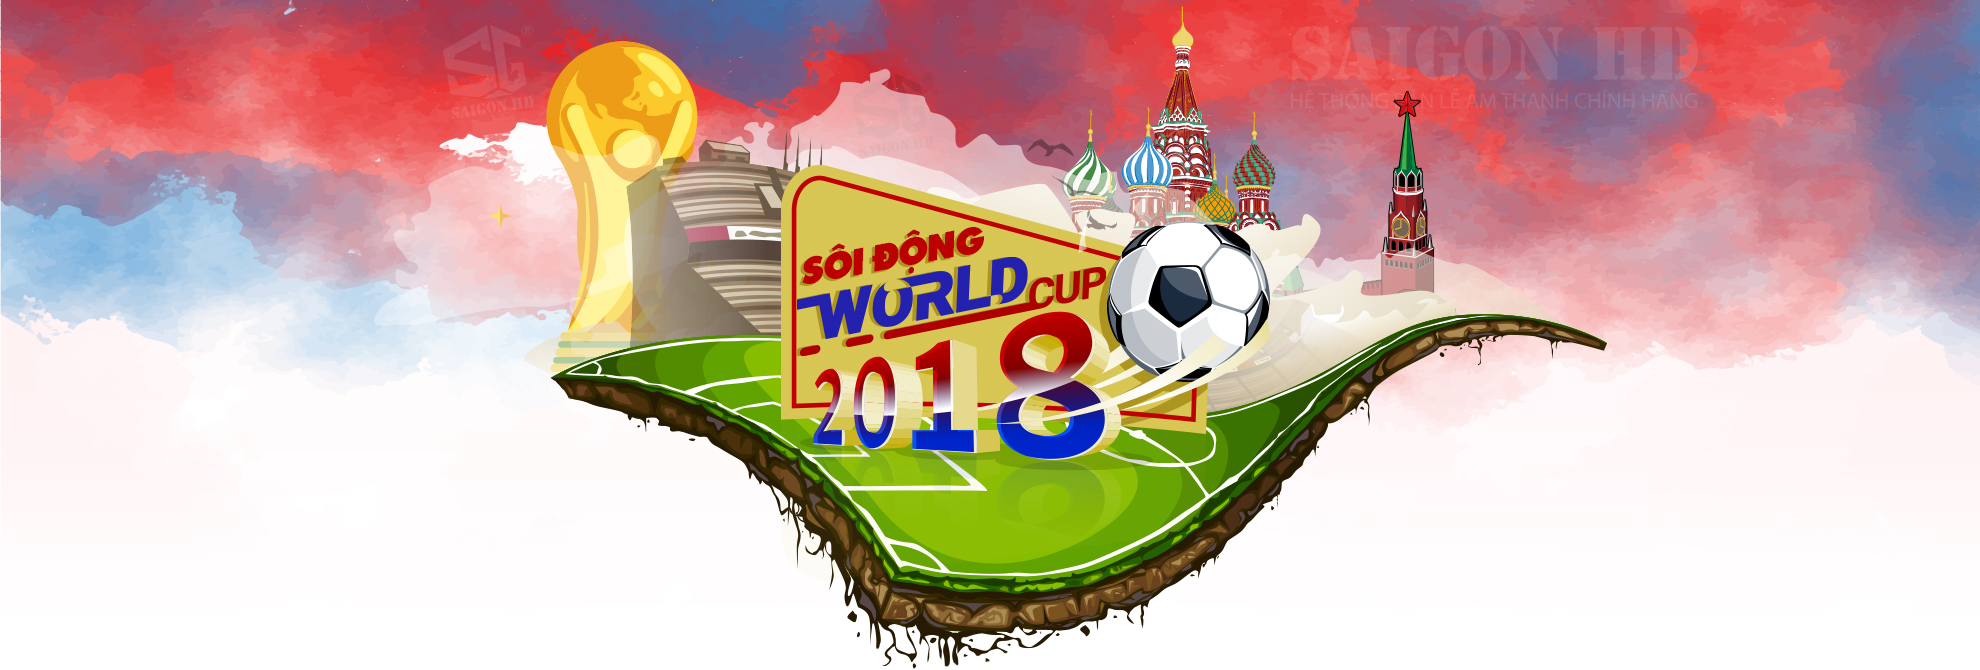 Khuyến mại World Cup 2018